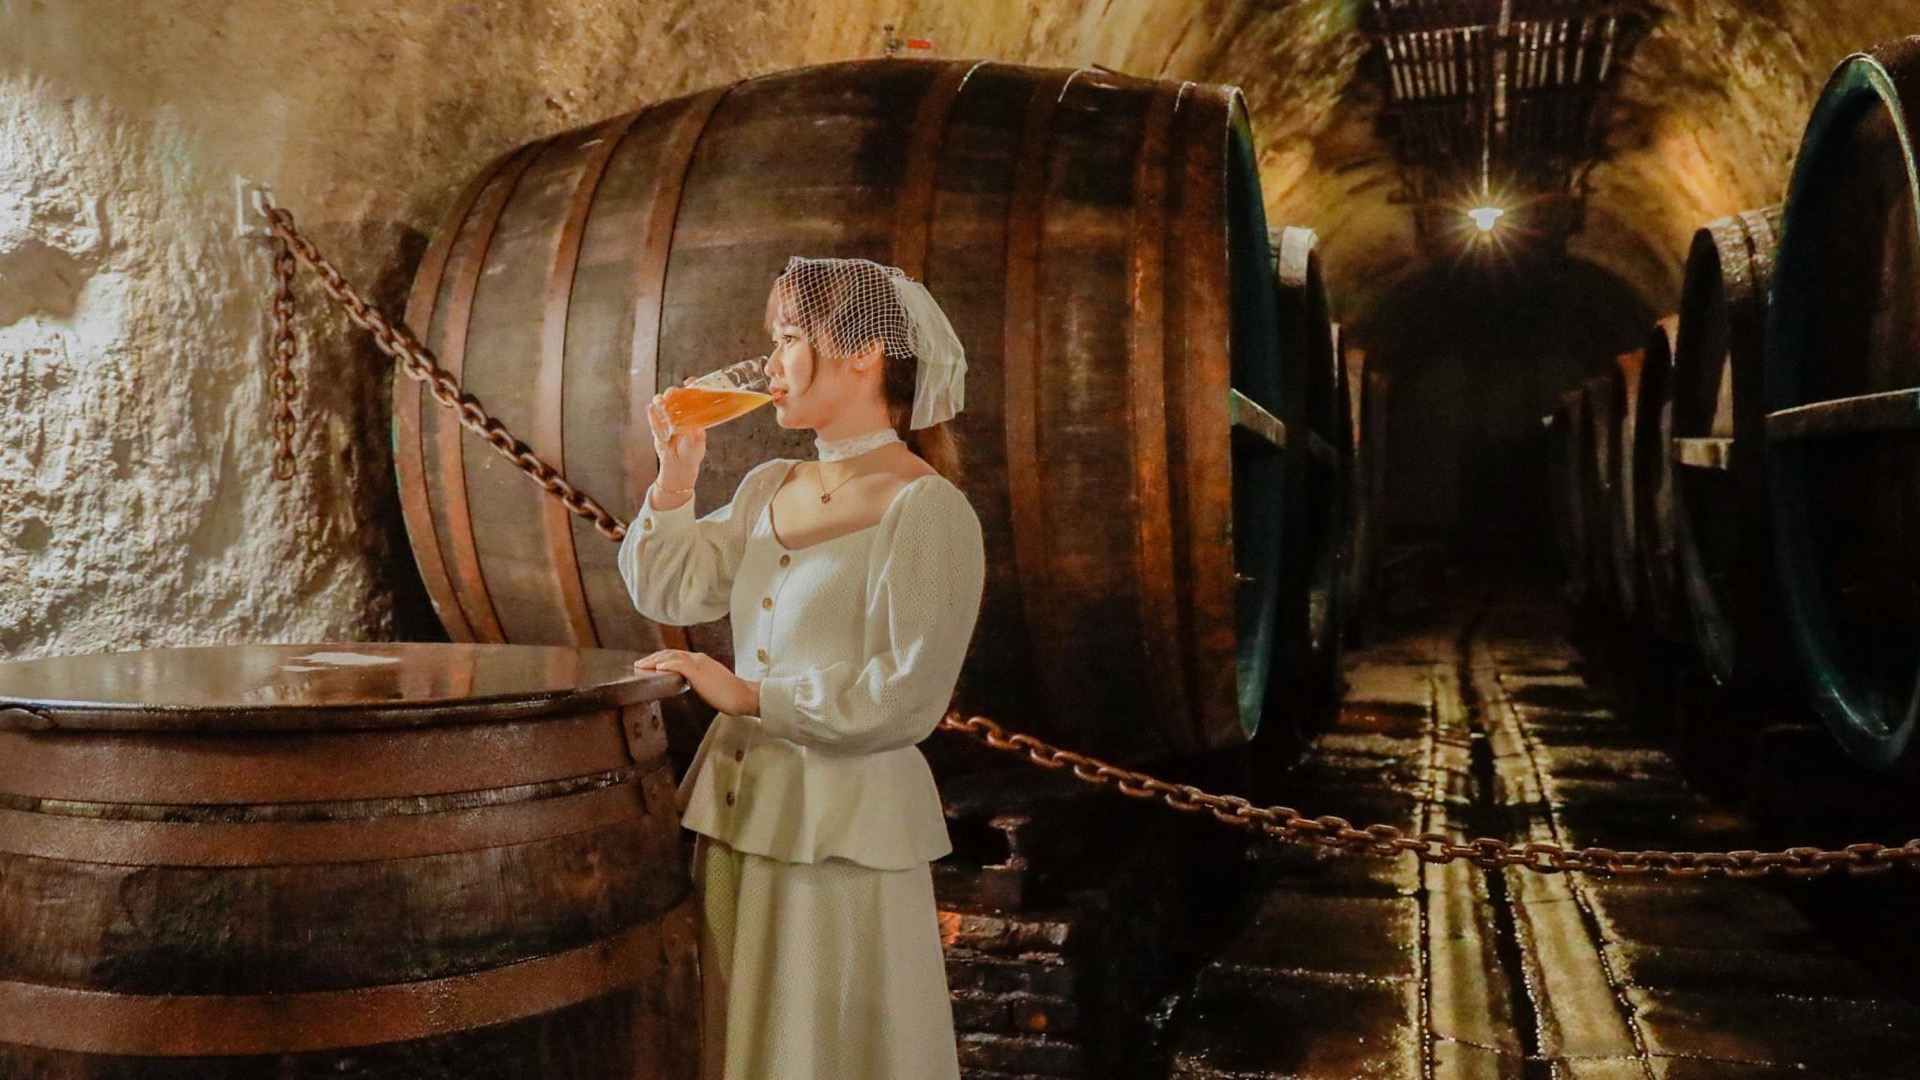 皮尔森之源啤酒厂是捷克最古老的啤酒厂之一，自1842年投产至今仍然在源源不断的生产啤酒。 在这里可以